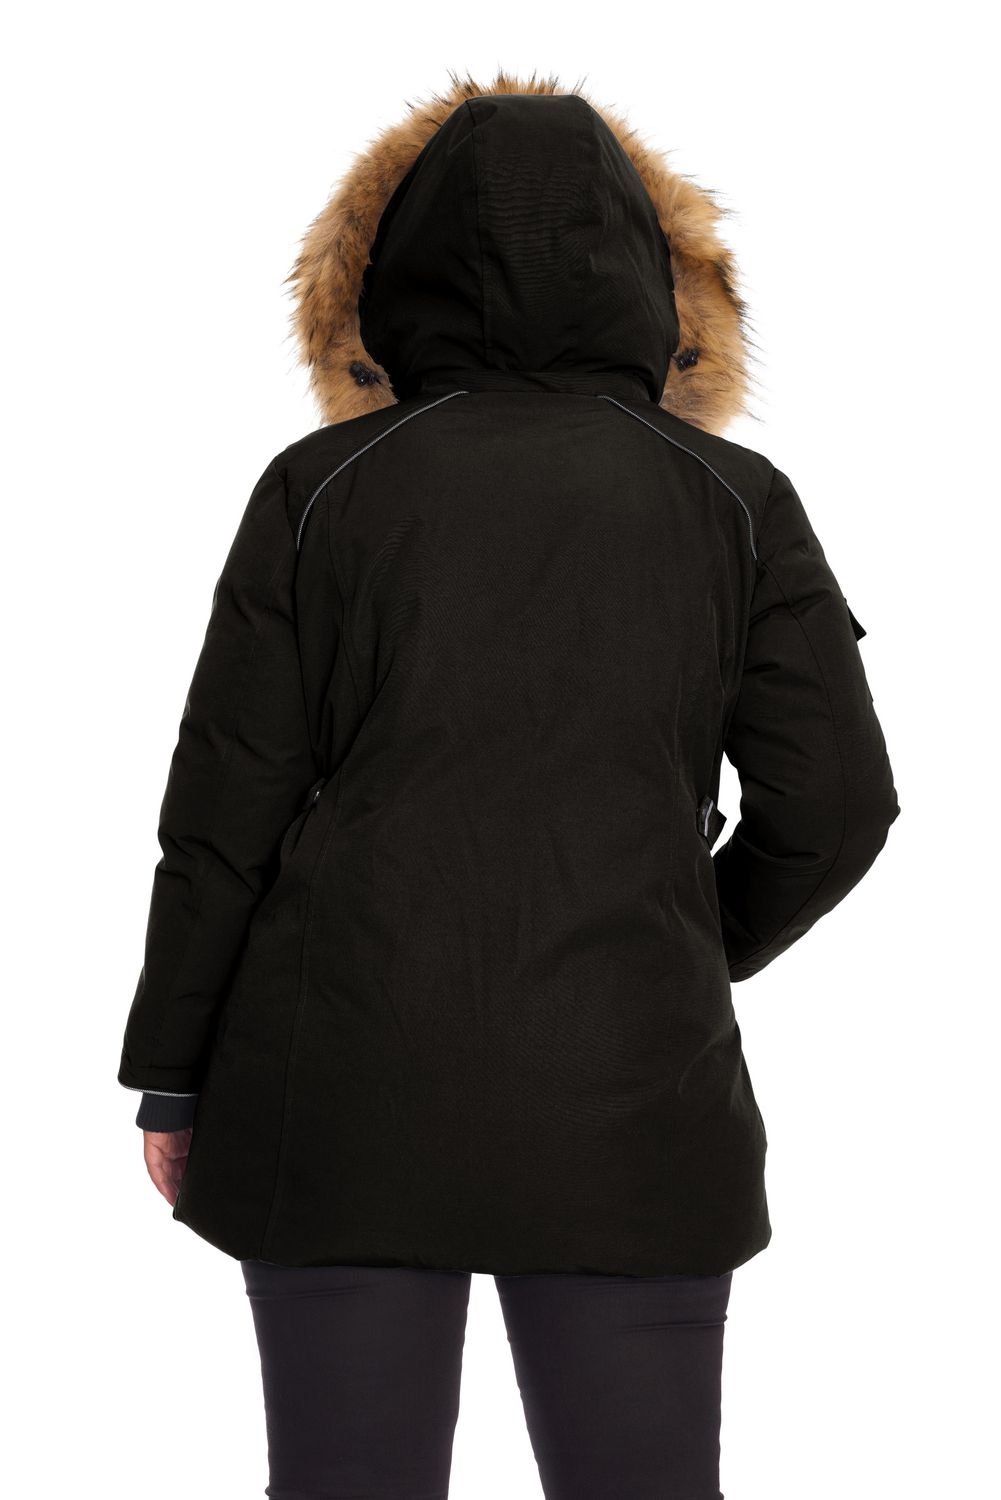 manteau hiver femme 4x